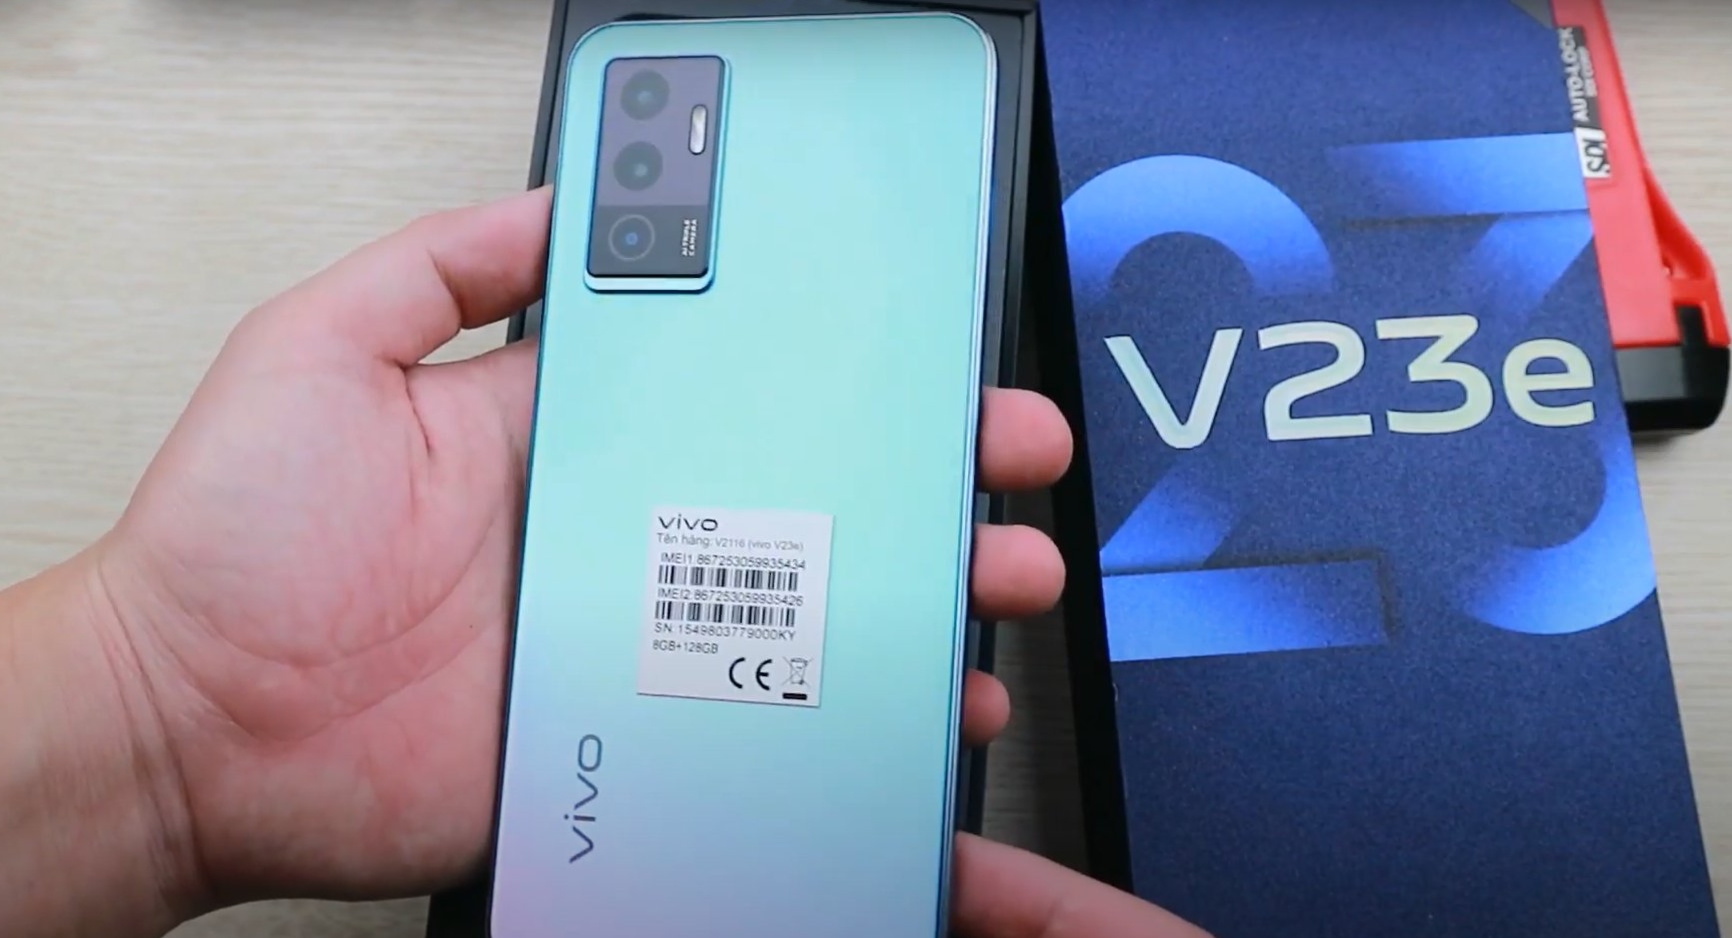 Live-Fotos und detaillierte Spezifikationen des Vivo V23e Smartphones sind aufgetaucht